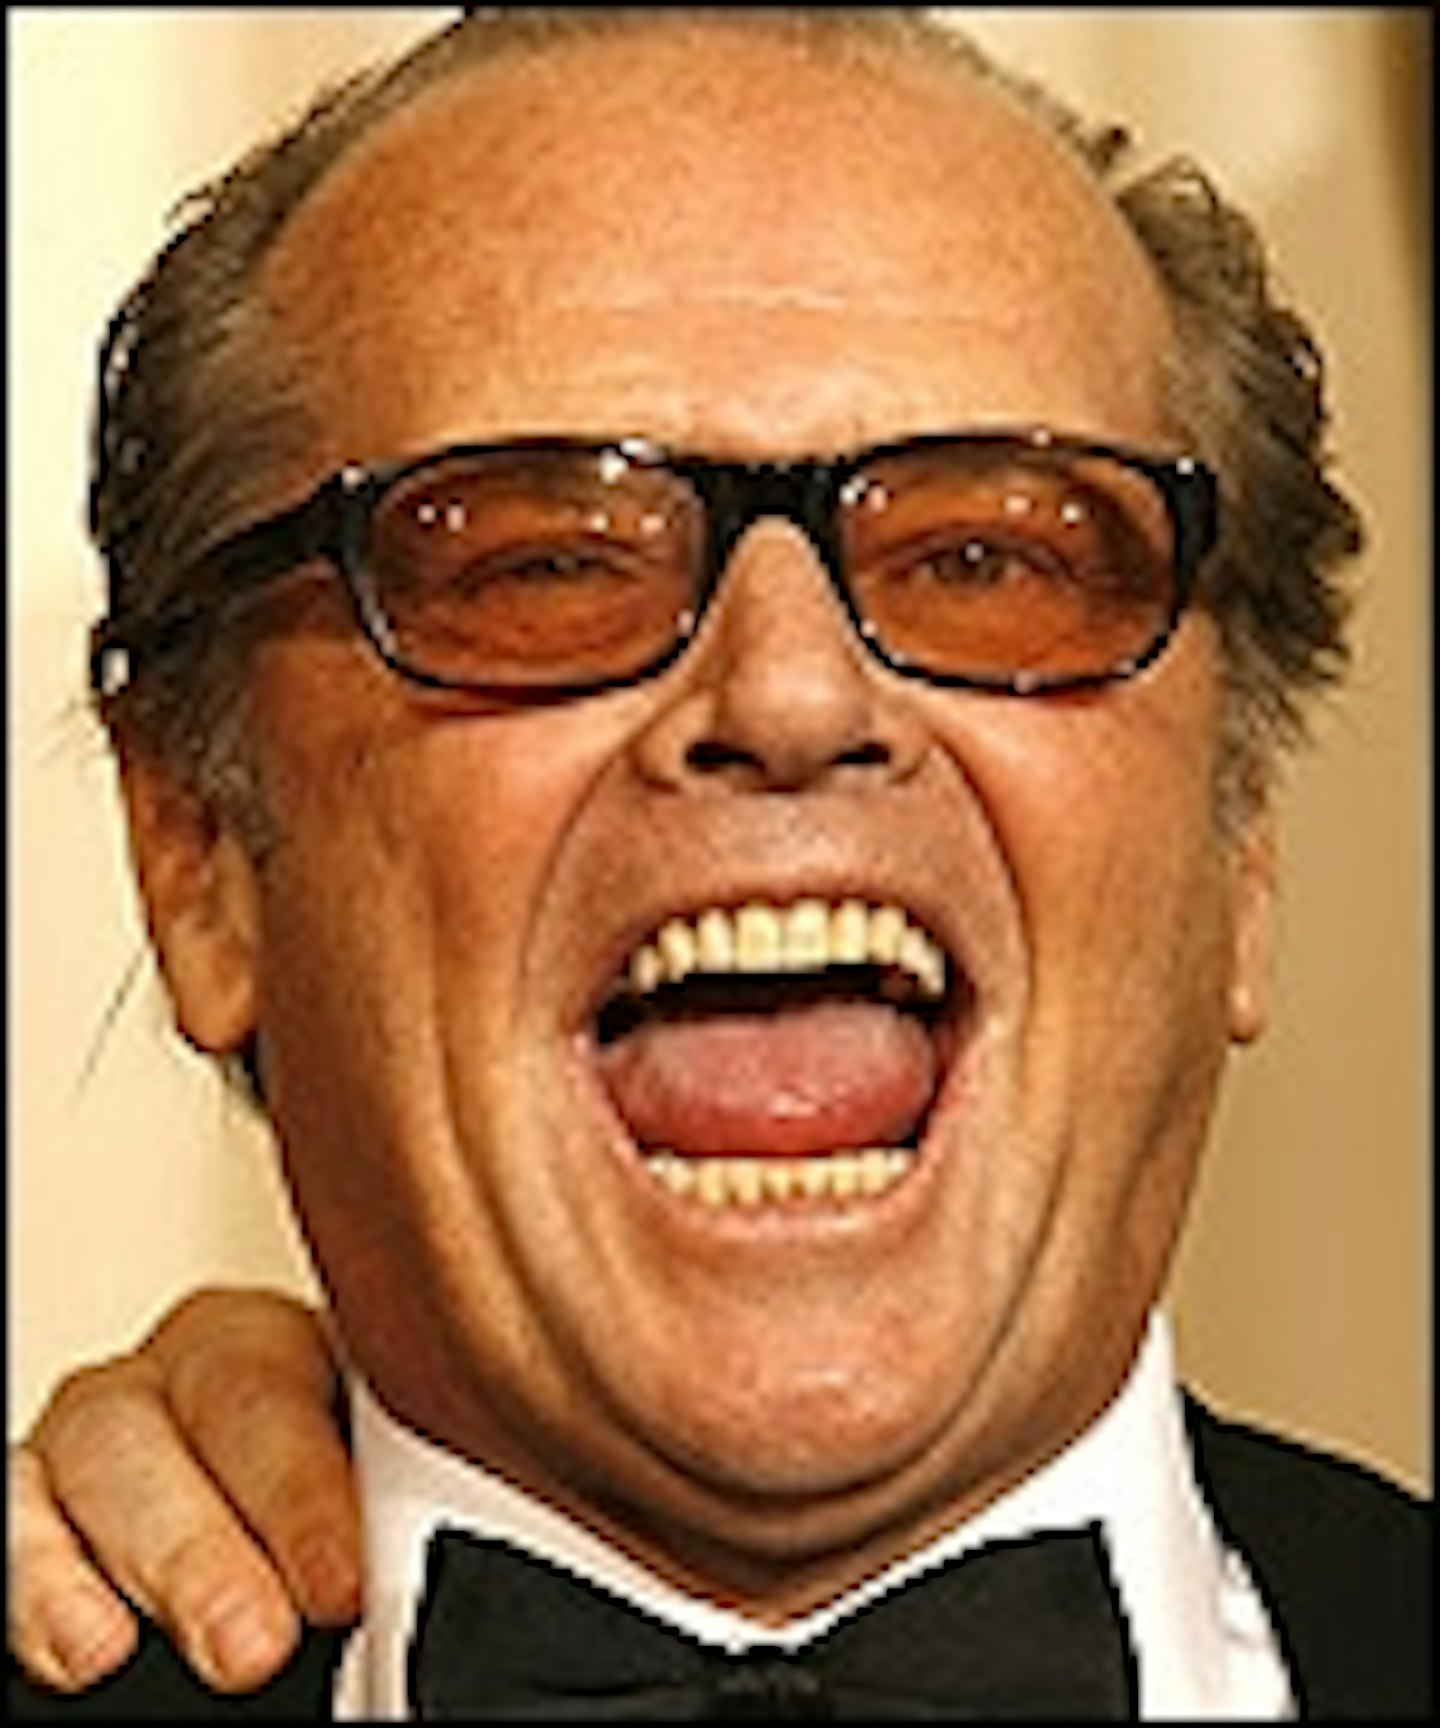 Jack Nicholson Off To LASt VEGAS?